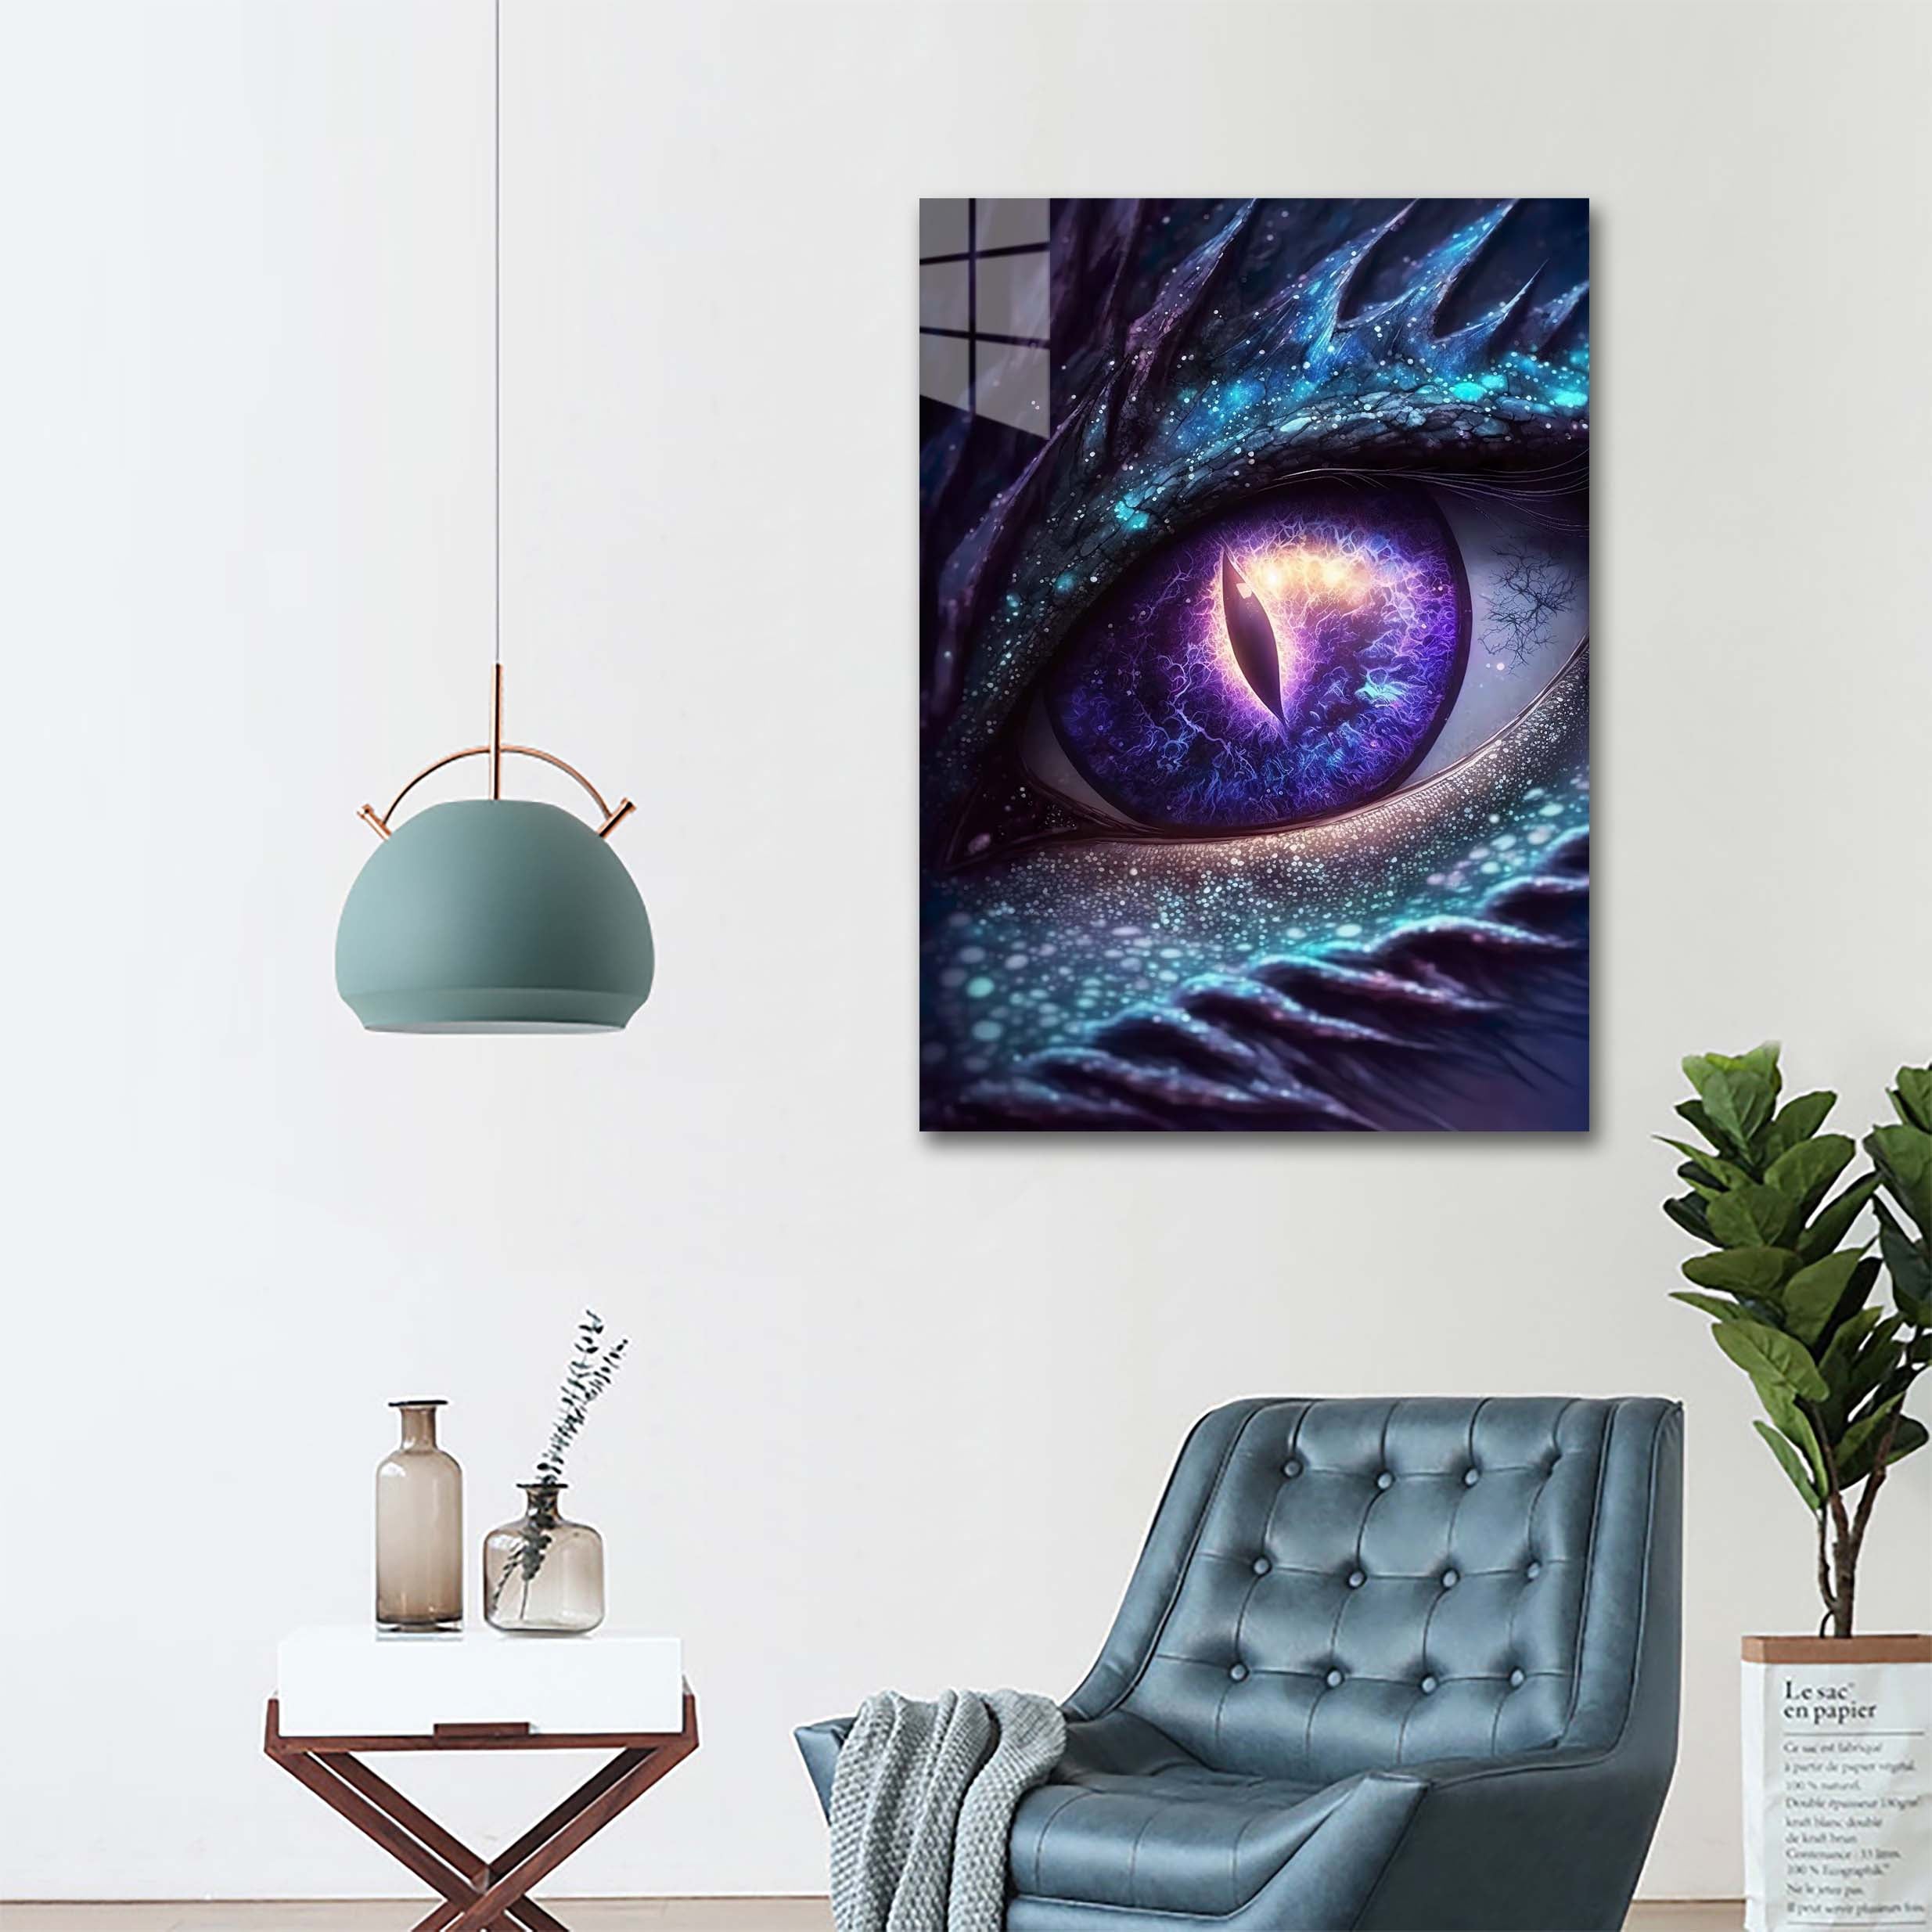 Galaxy Dragon Eye-designed by @Paragy